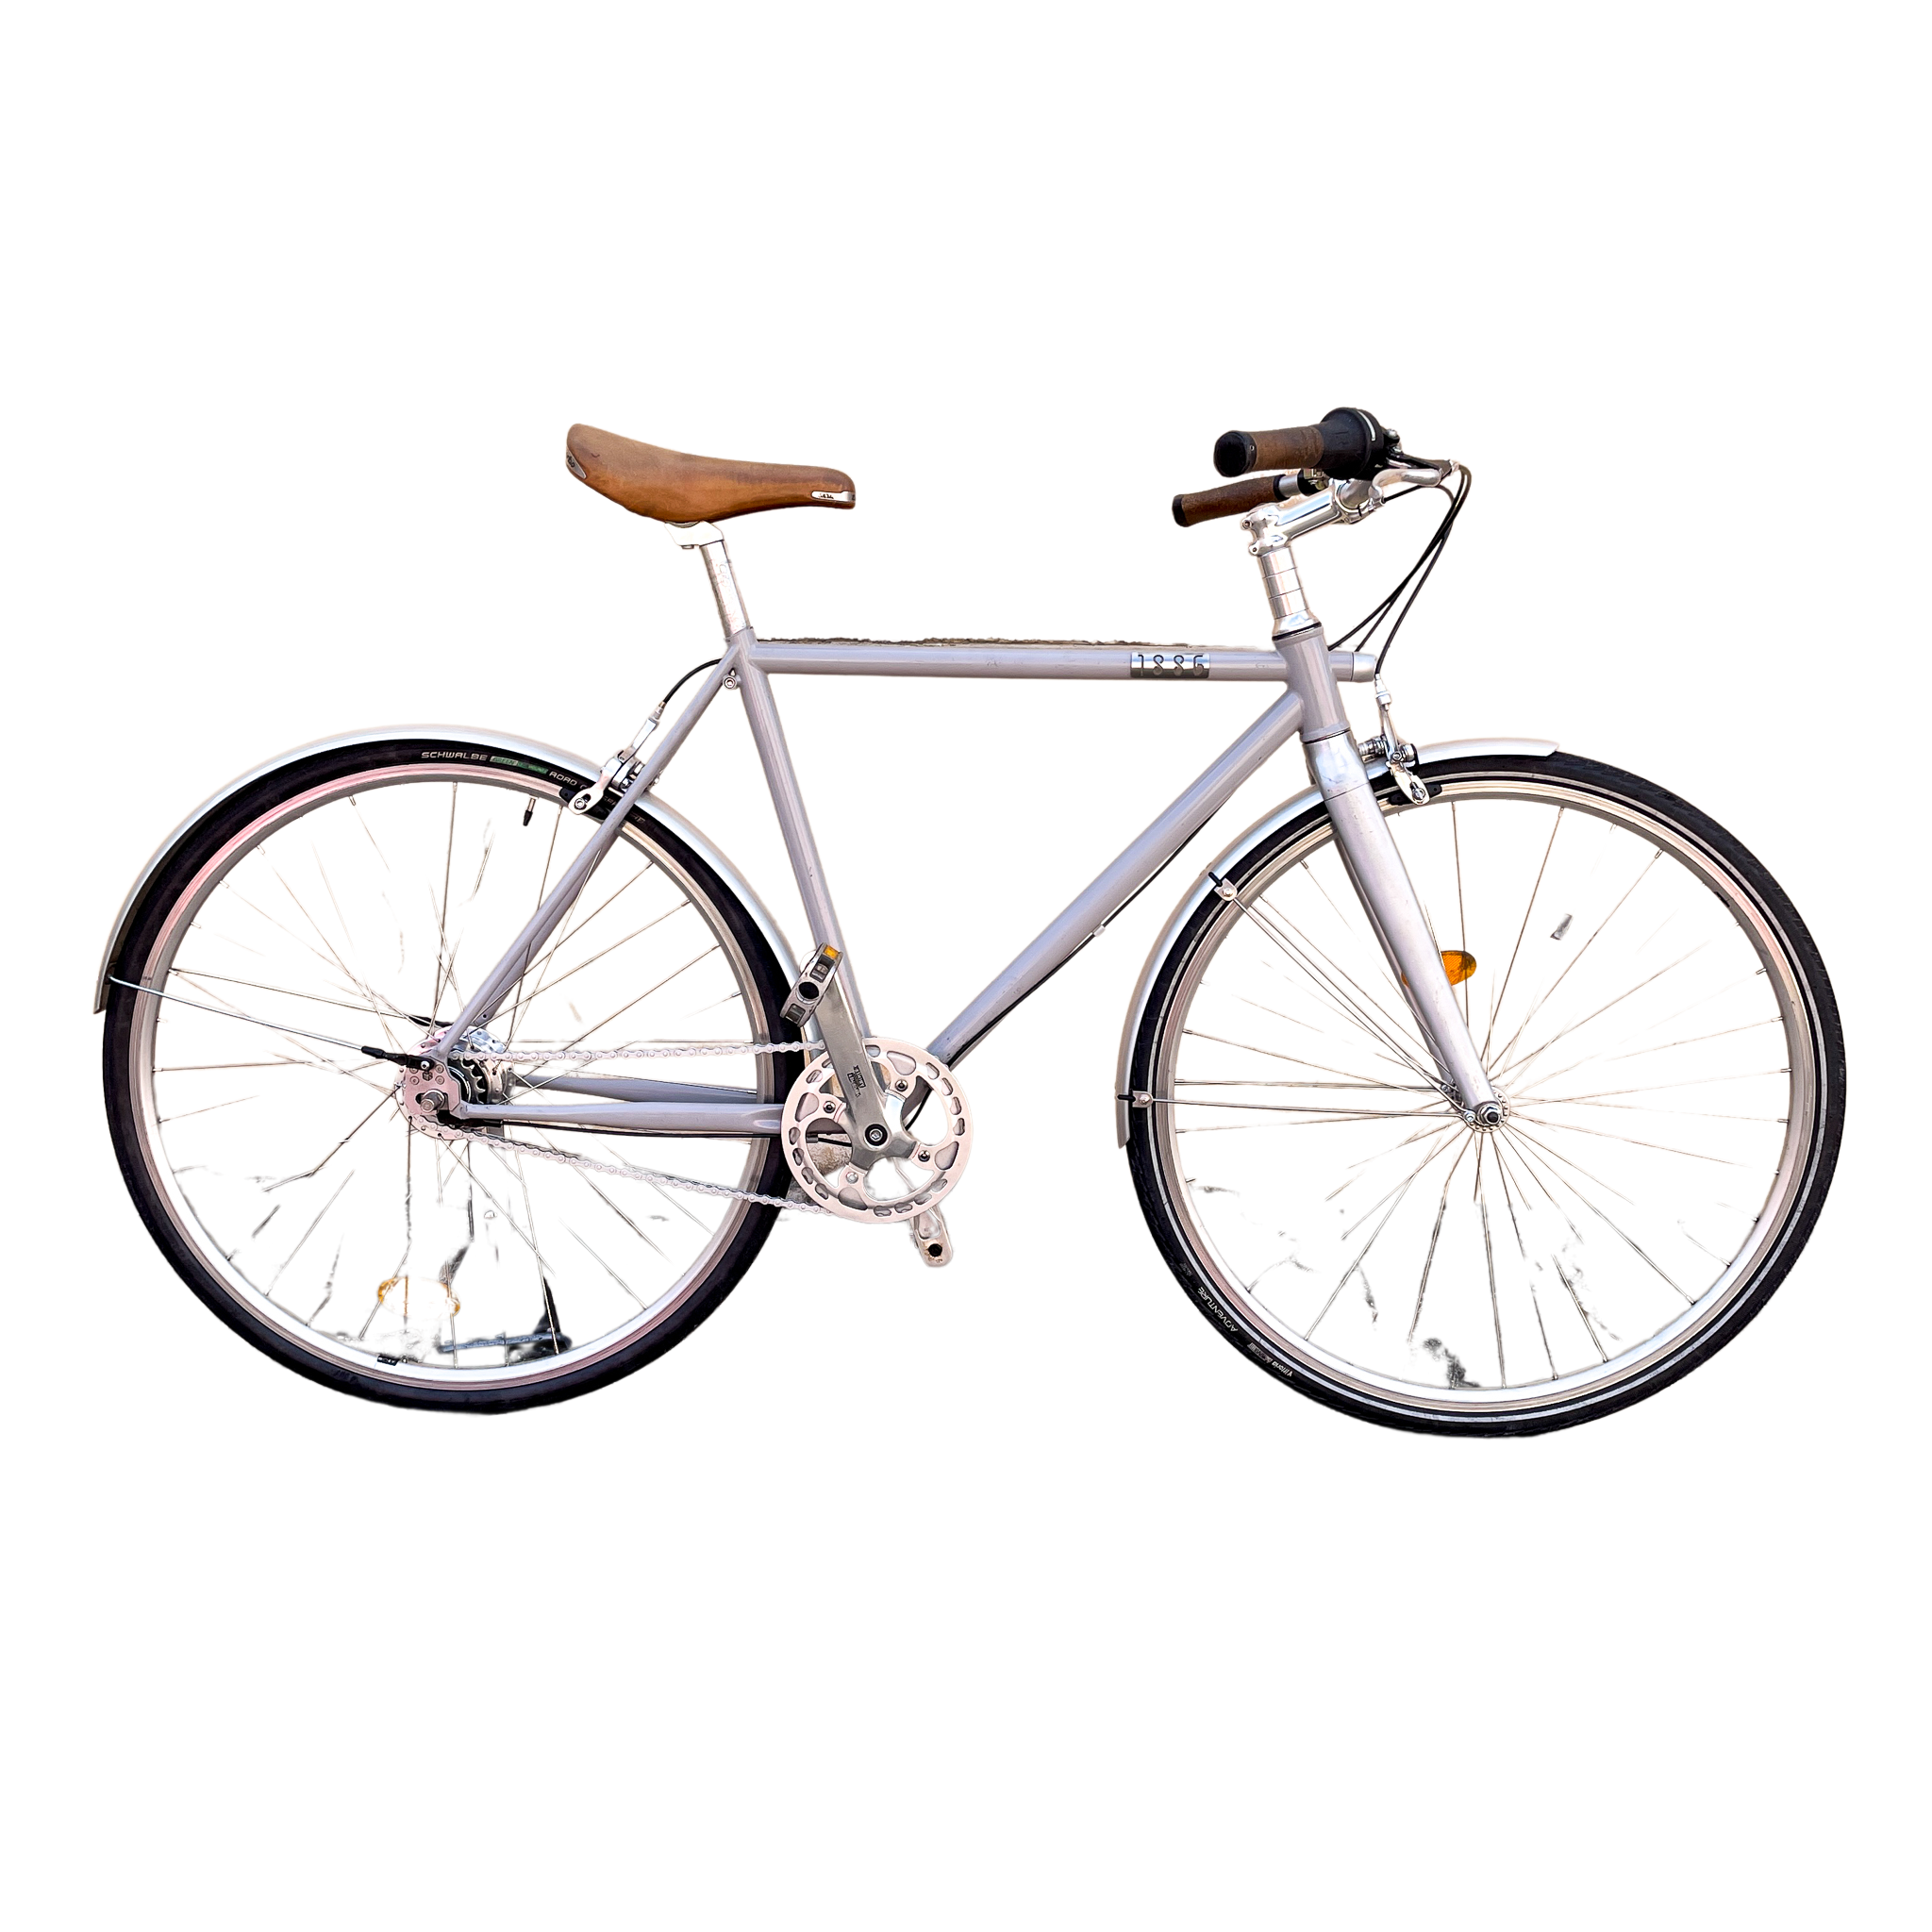 1886 cycles - Agile classique